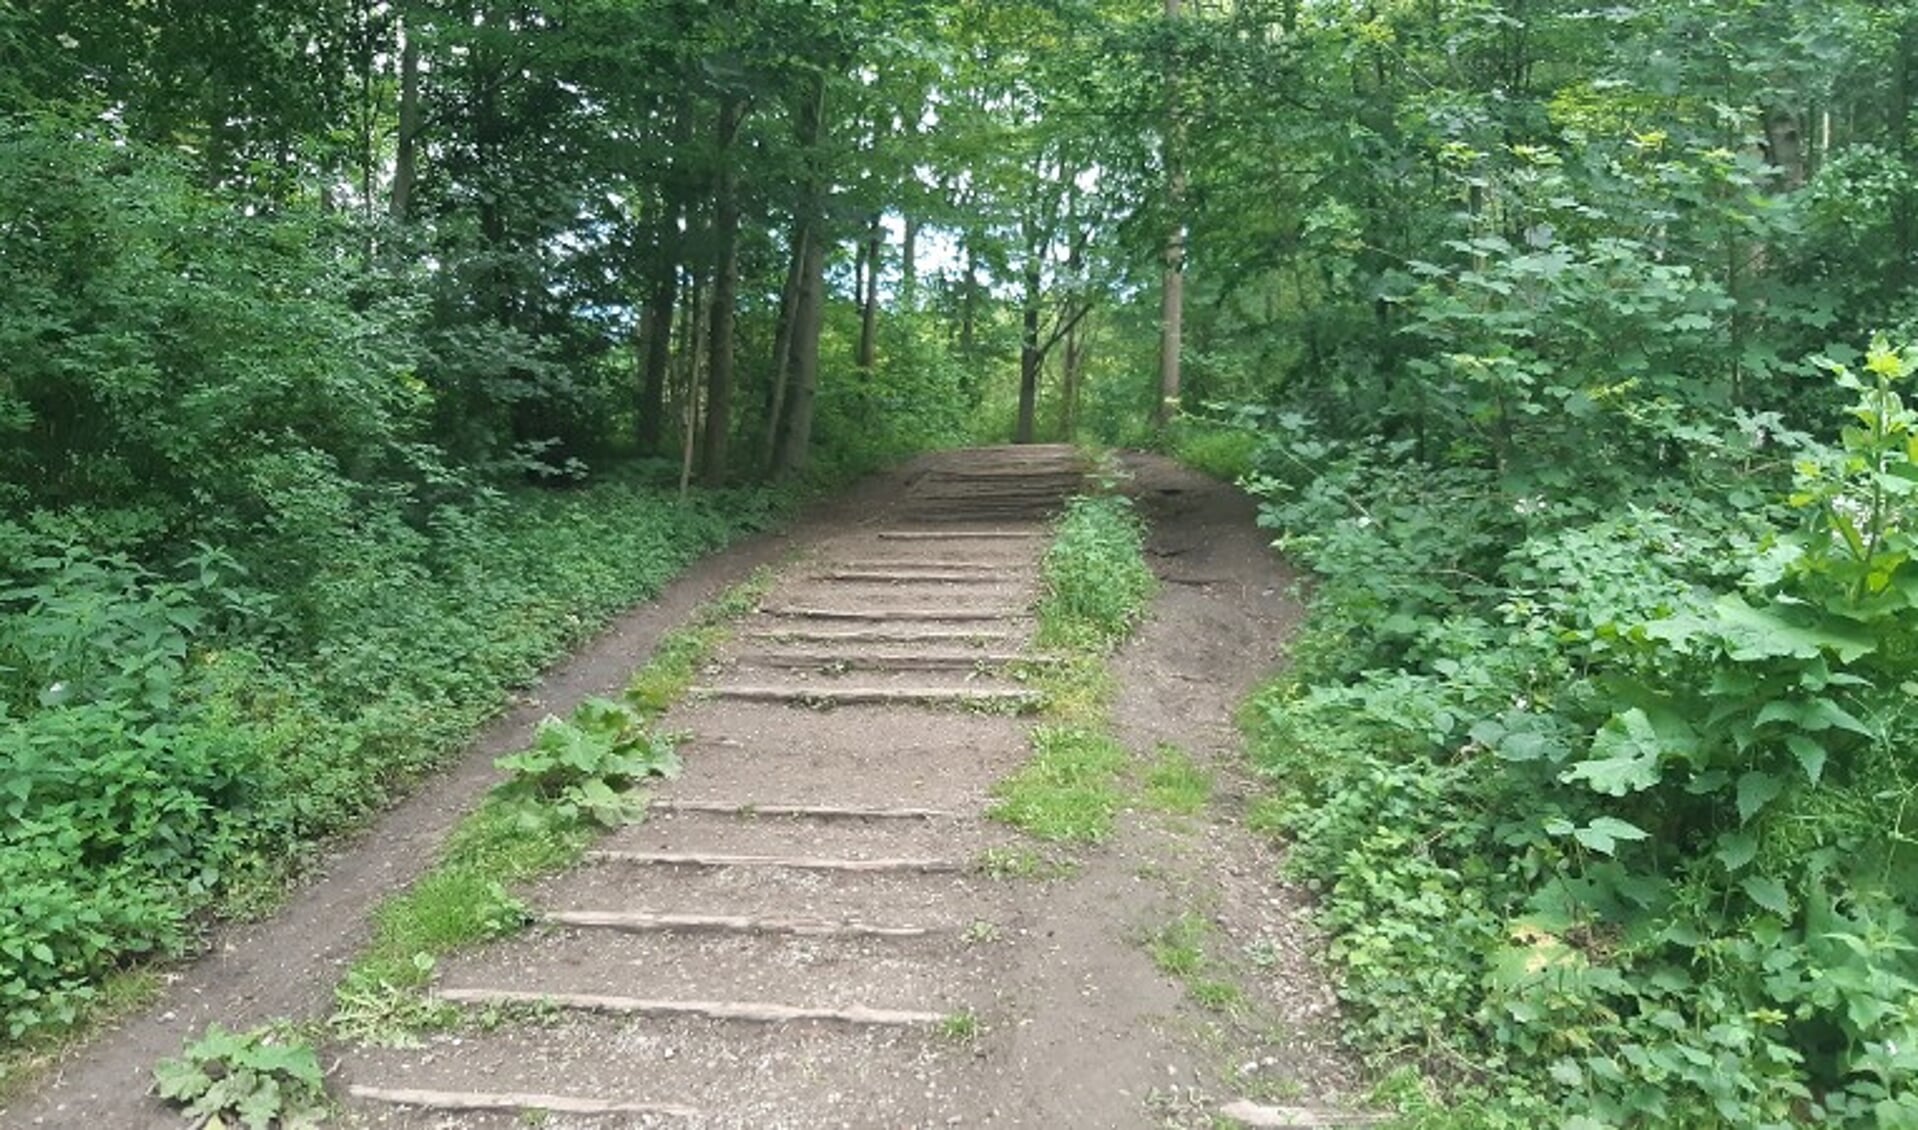 Het pad in het Amsterdamse Bos waar de valpartij plaatsvond.